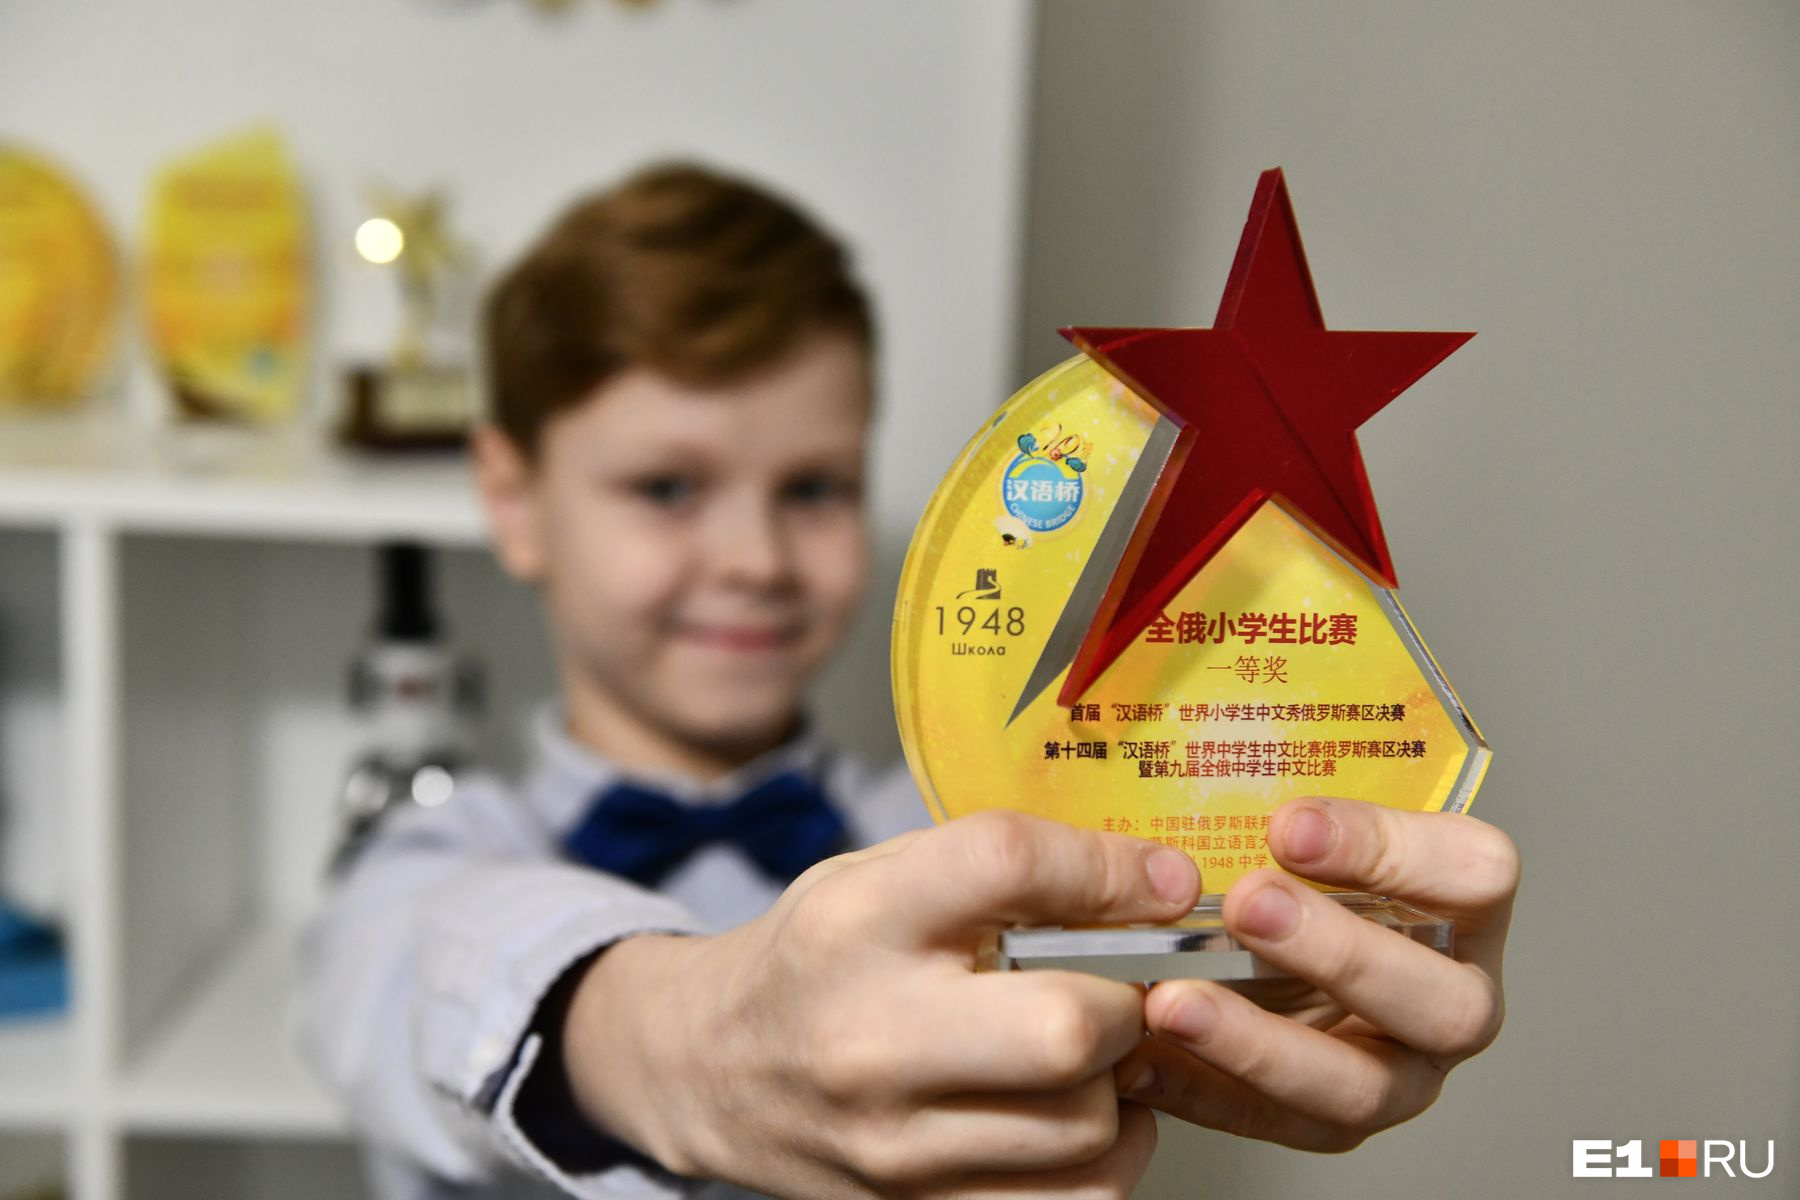 Вот самая главная награда за победу в чемпионате мира по китайскому языку